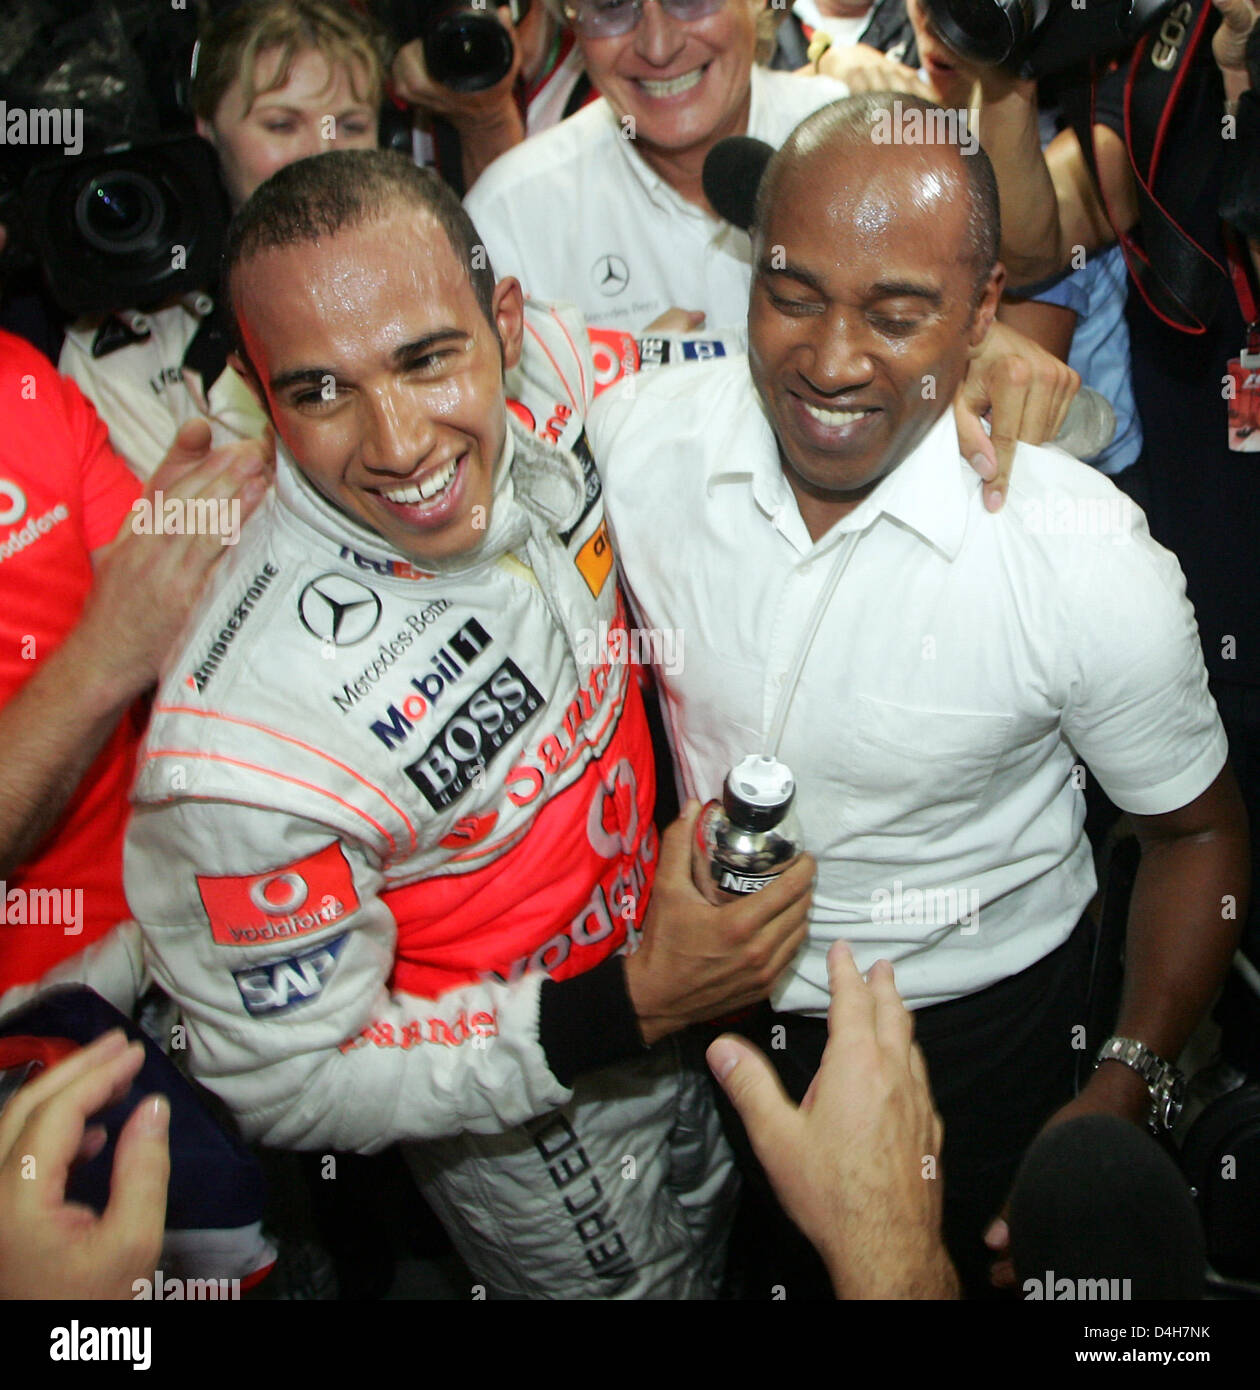 Britische Formel1-Fahrer Lewis Hamilton (L) von McLaren Mercedes feiert seine Meisterschaft mit seinem Vater Anthony nach der F1 Grand Prix von Brasilien auf der Rennstrecke verfolgen in Interlagos bei Sao Paulo in Brasilien, 2. November 2008. Hamilton wurde 5. und gewann den Titel. Foto: ROLAND WEIHRAUCH Stockfoto